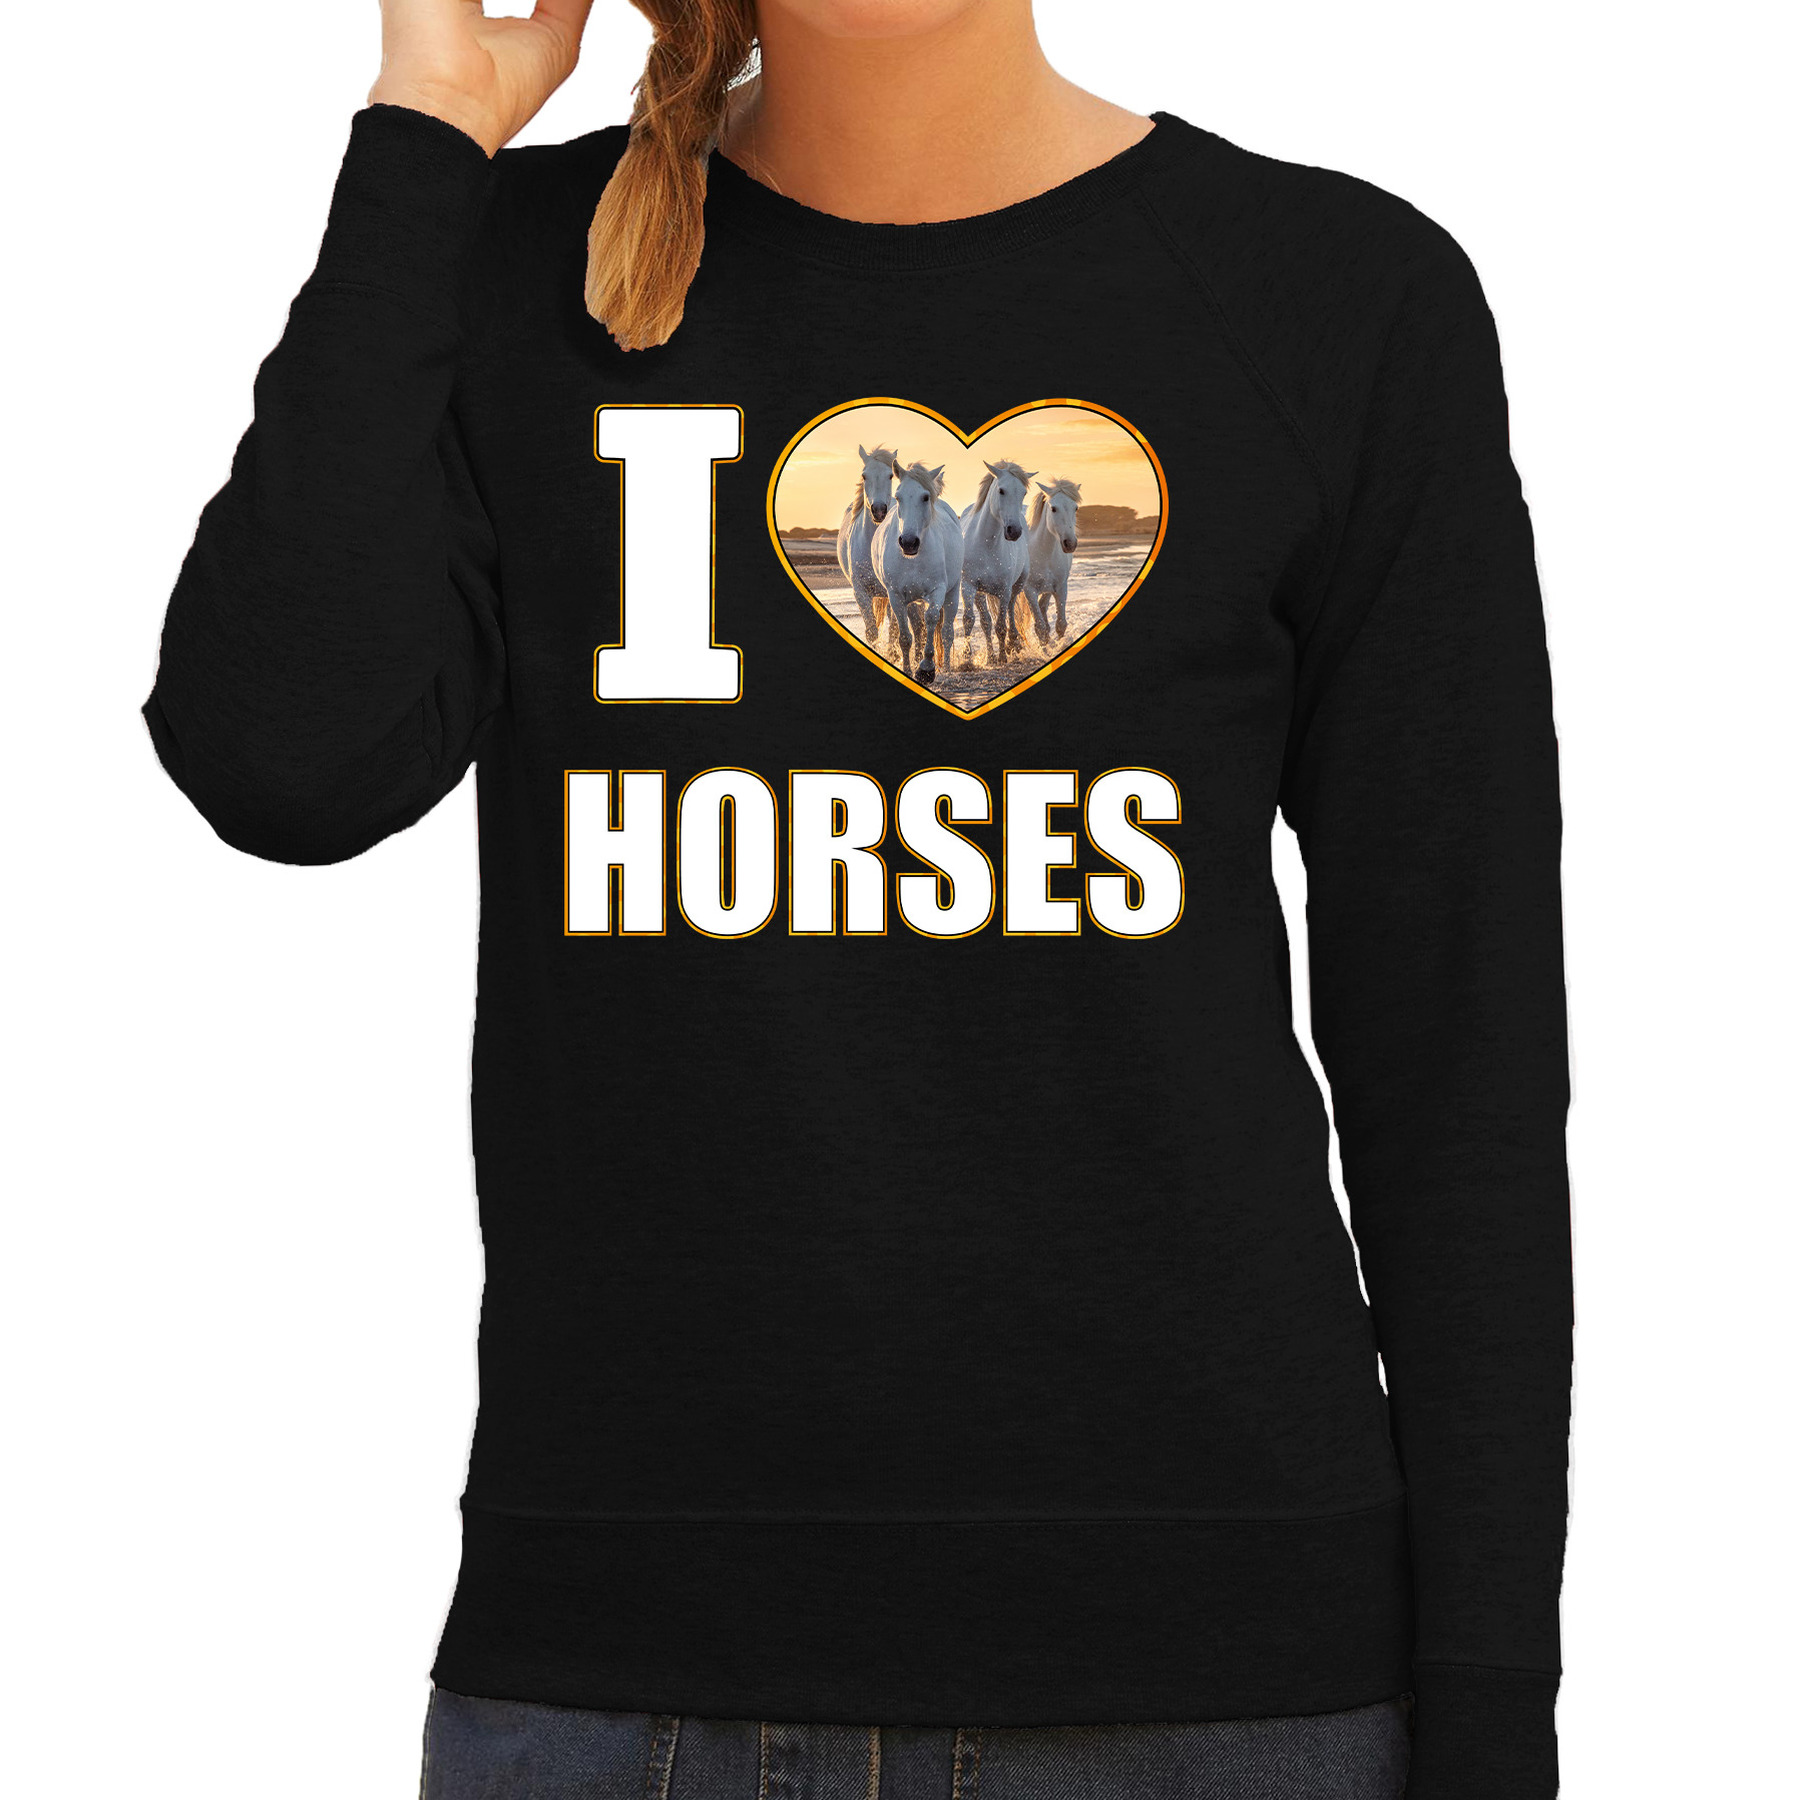 I love horses sweater - trui met dieren foto van een wit paard zwart voor dames